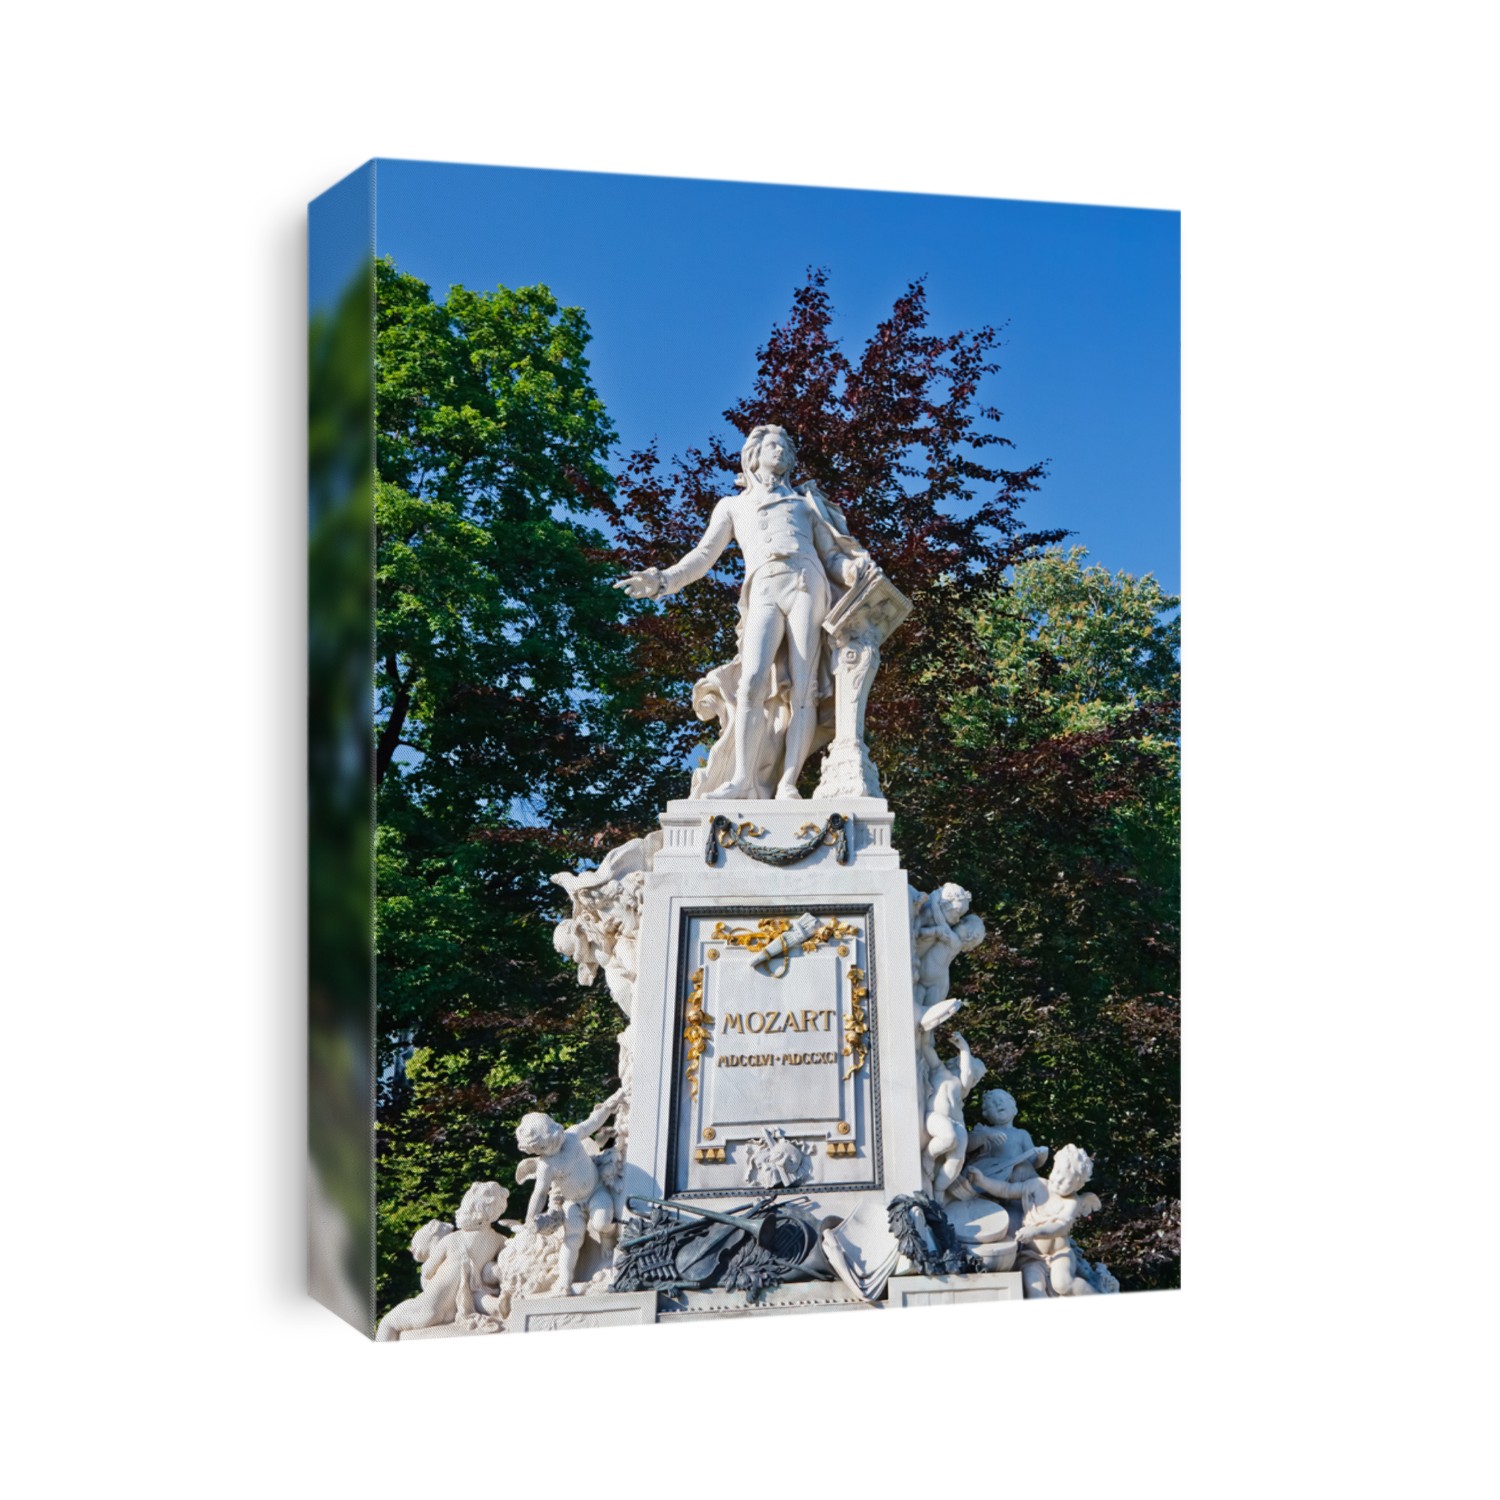 Statue of Wolfgang Amadeus Mozart in Burggarten, Vienna